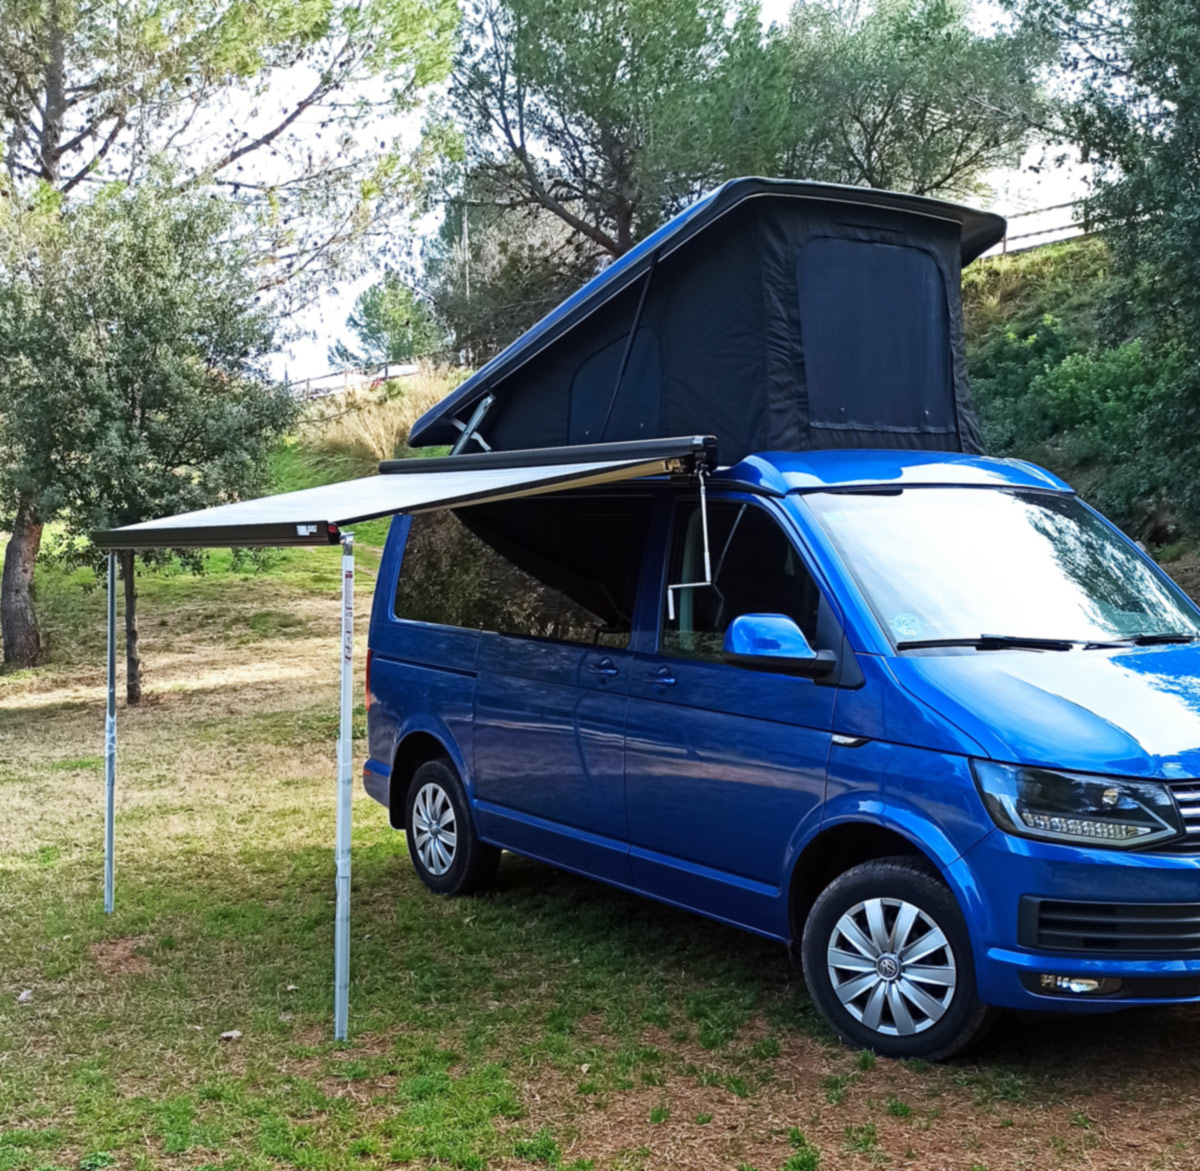 Camperización de furgonetas en Castellbisbal Asesoramiento y diseño camper en Castellbisbal Caribú Vans, especializados en el mundo camper